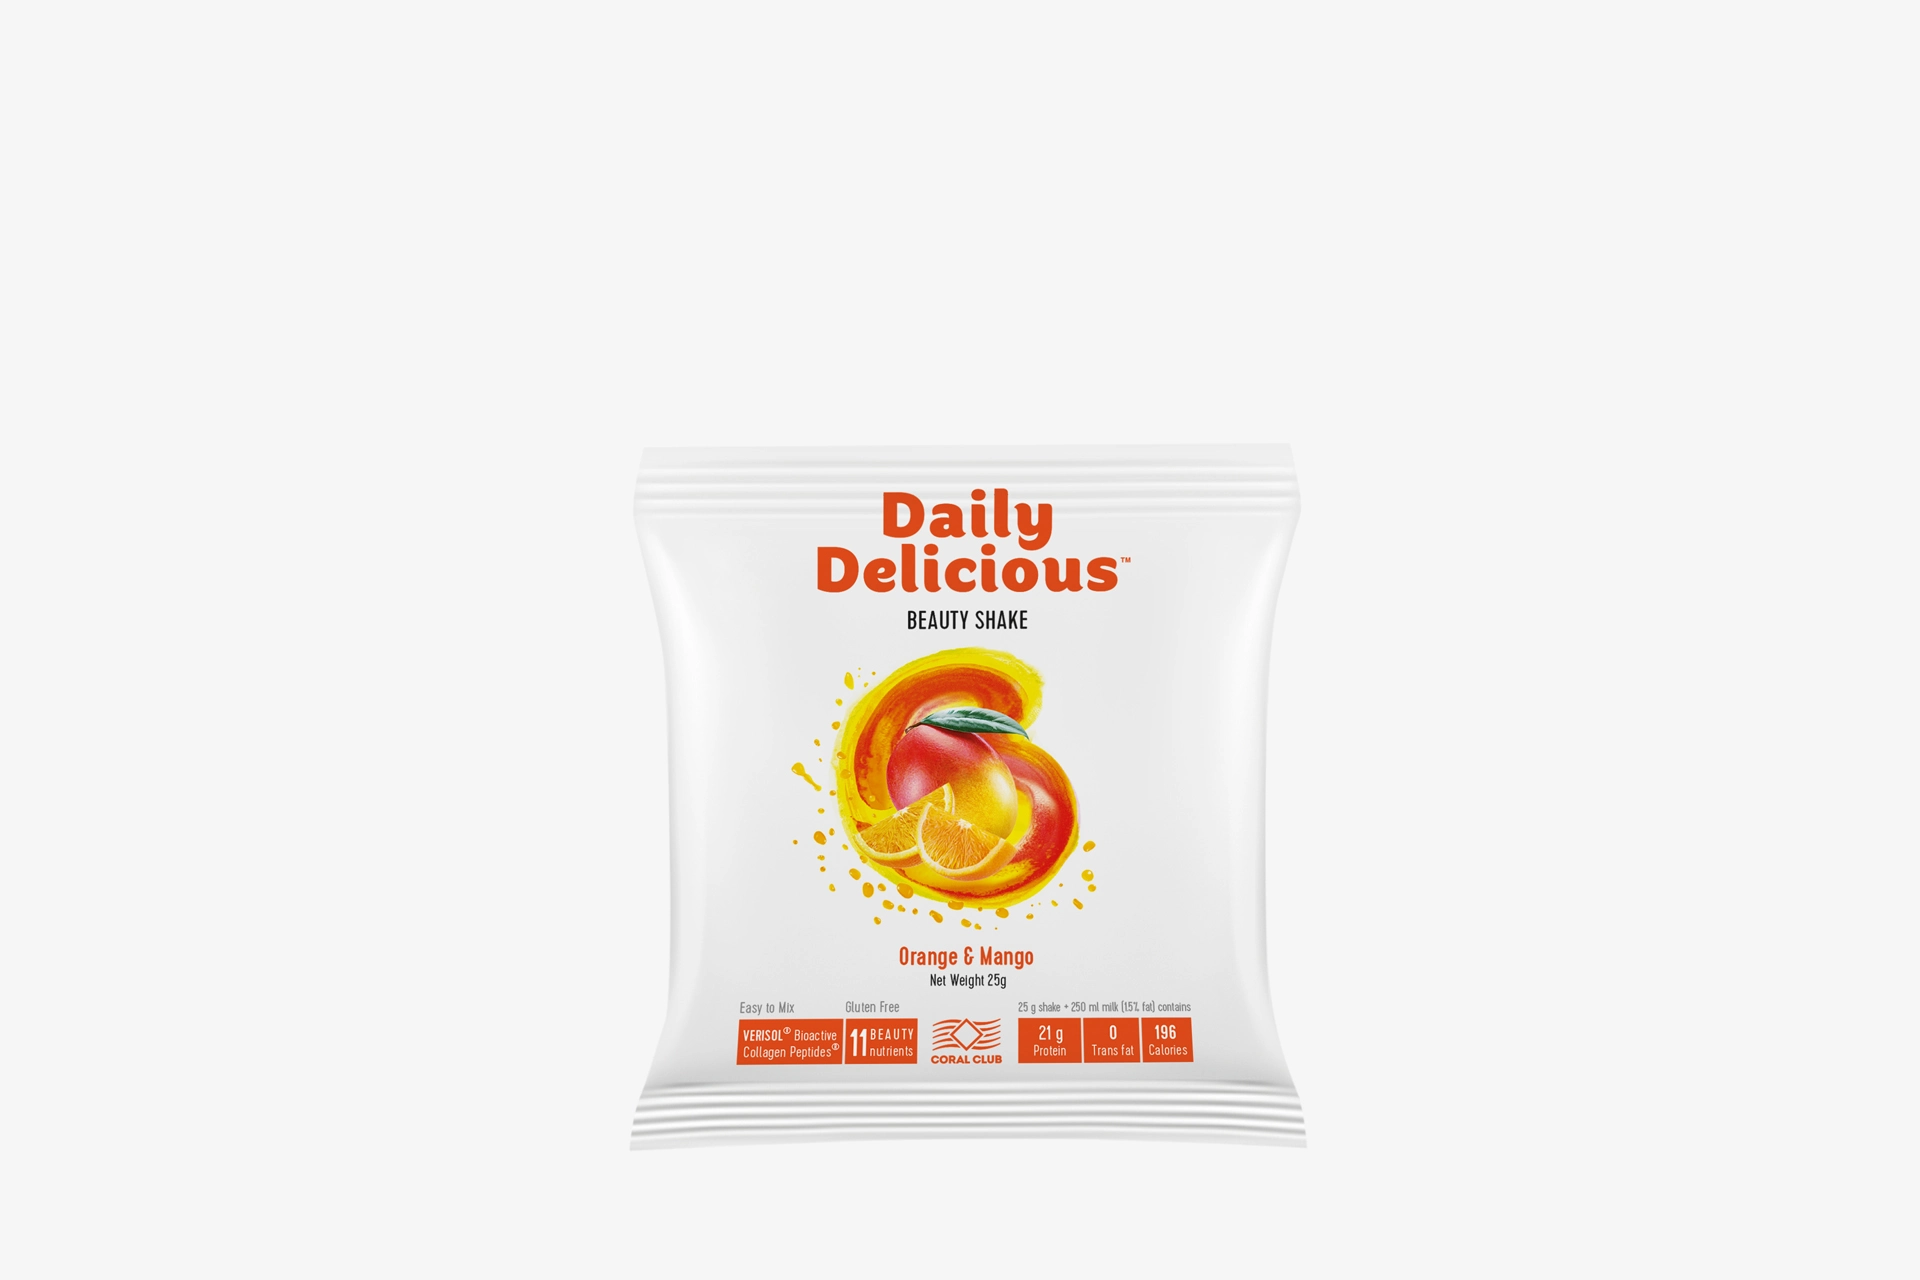 Daily Delicious Beauty Shake cu aromă de portocale și mango